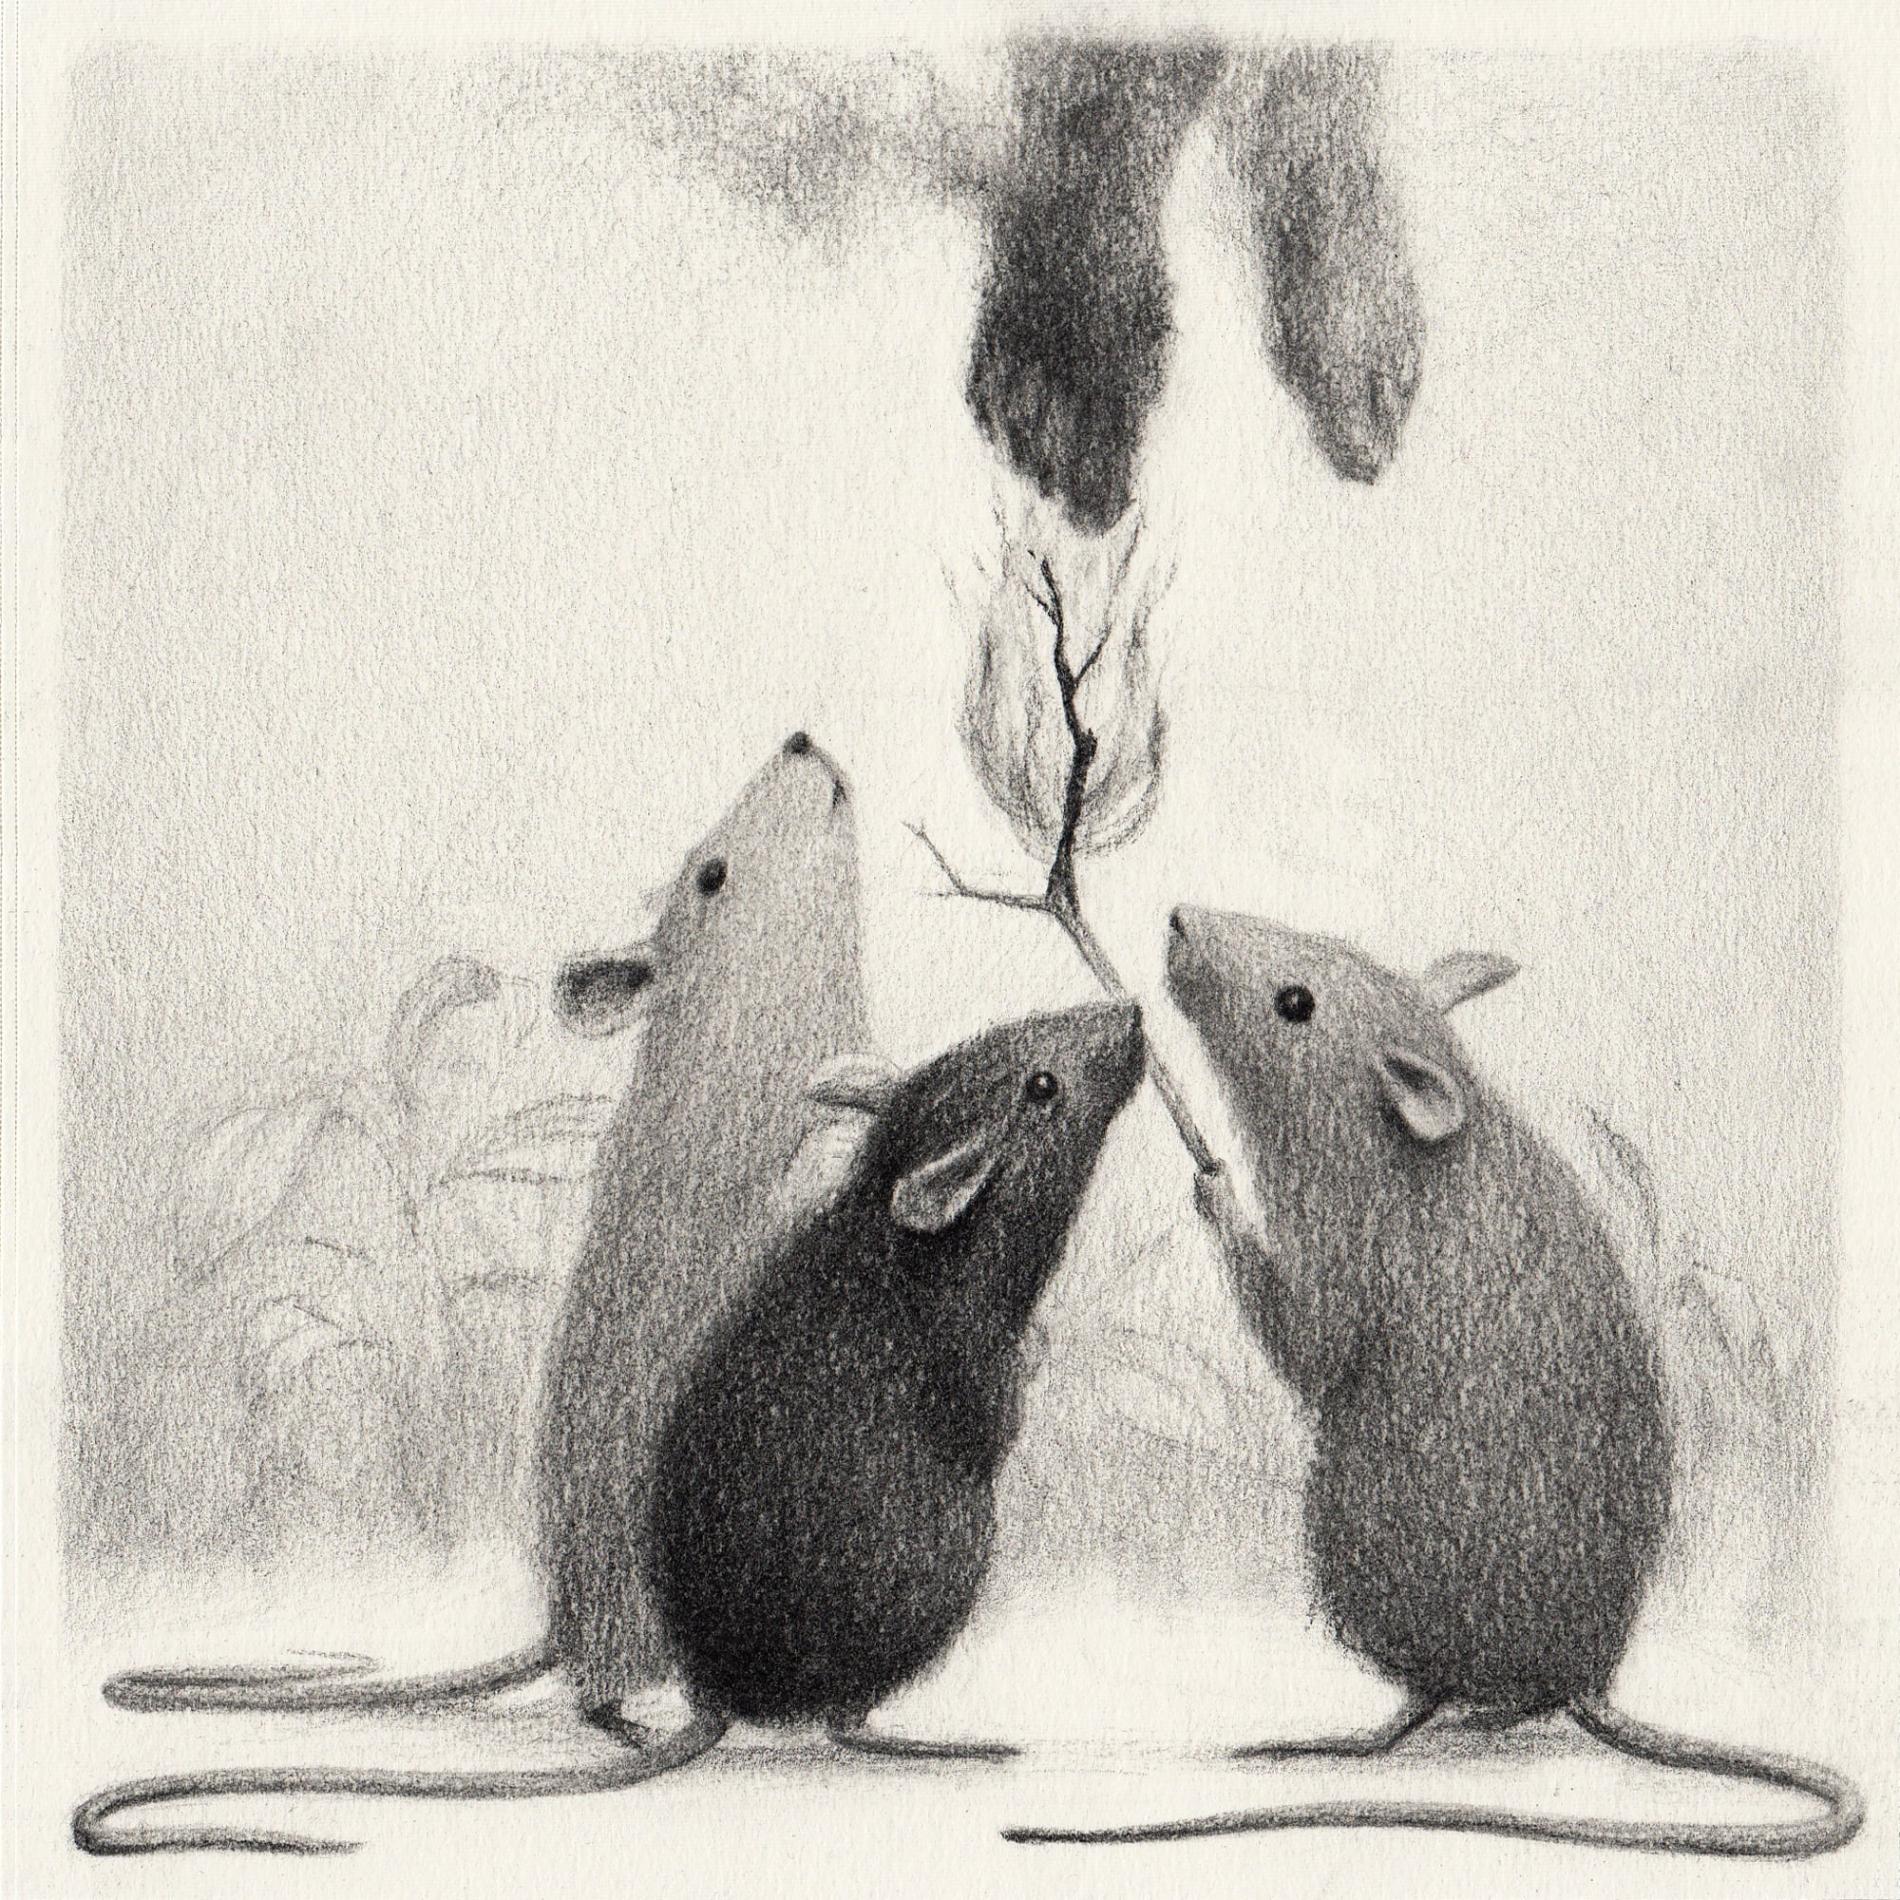 ilustracion en blanco y negro de ratones reunidos